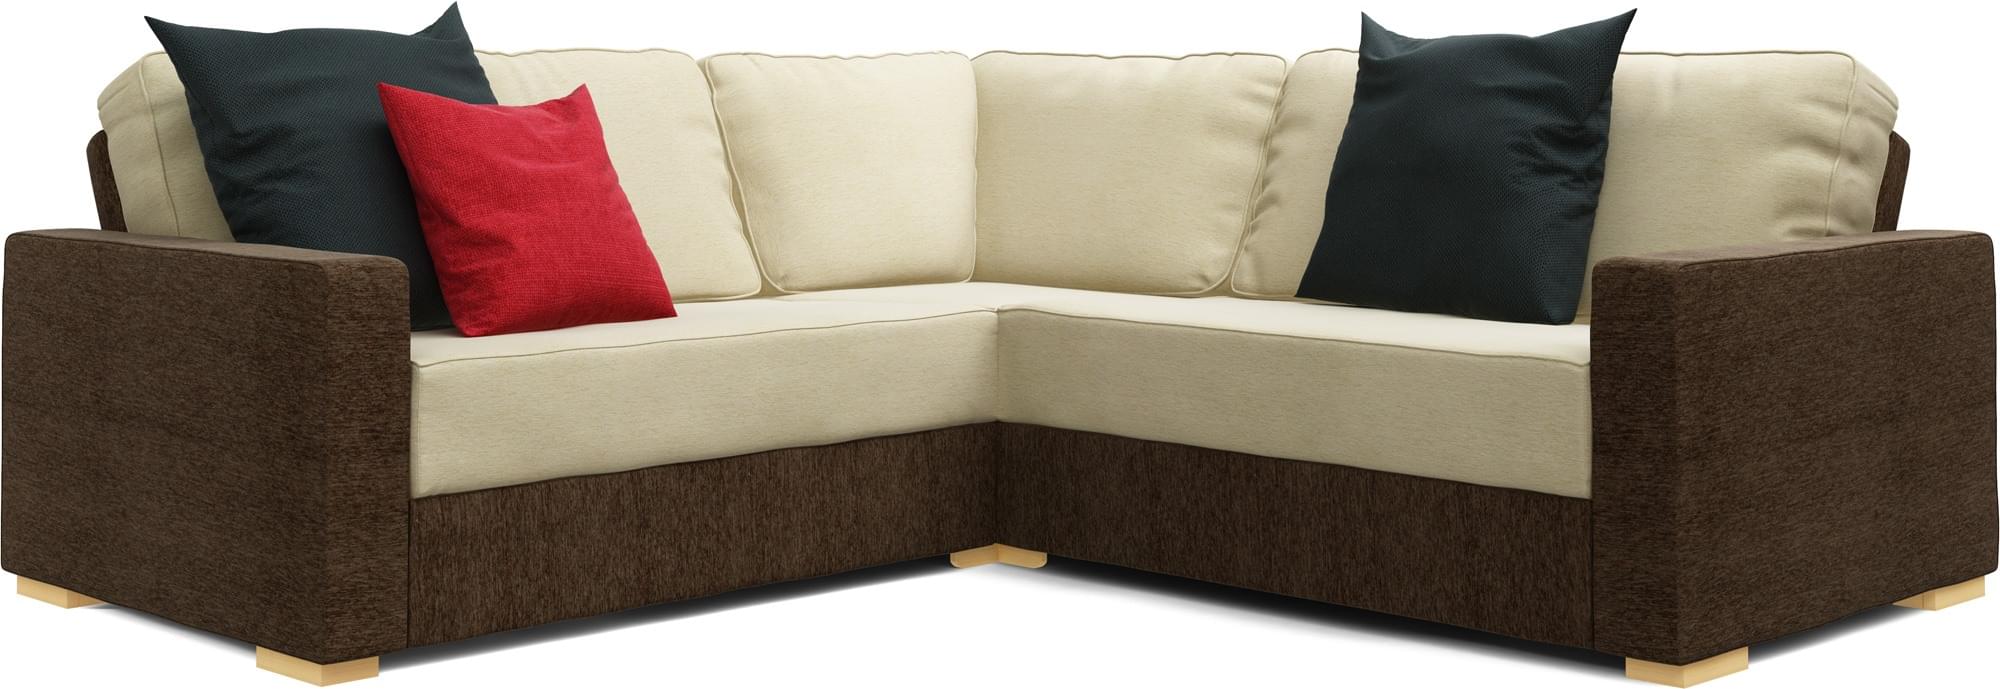 Xan 2X2 Corner Single Sofa Bed